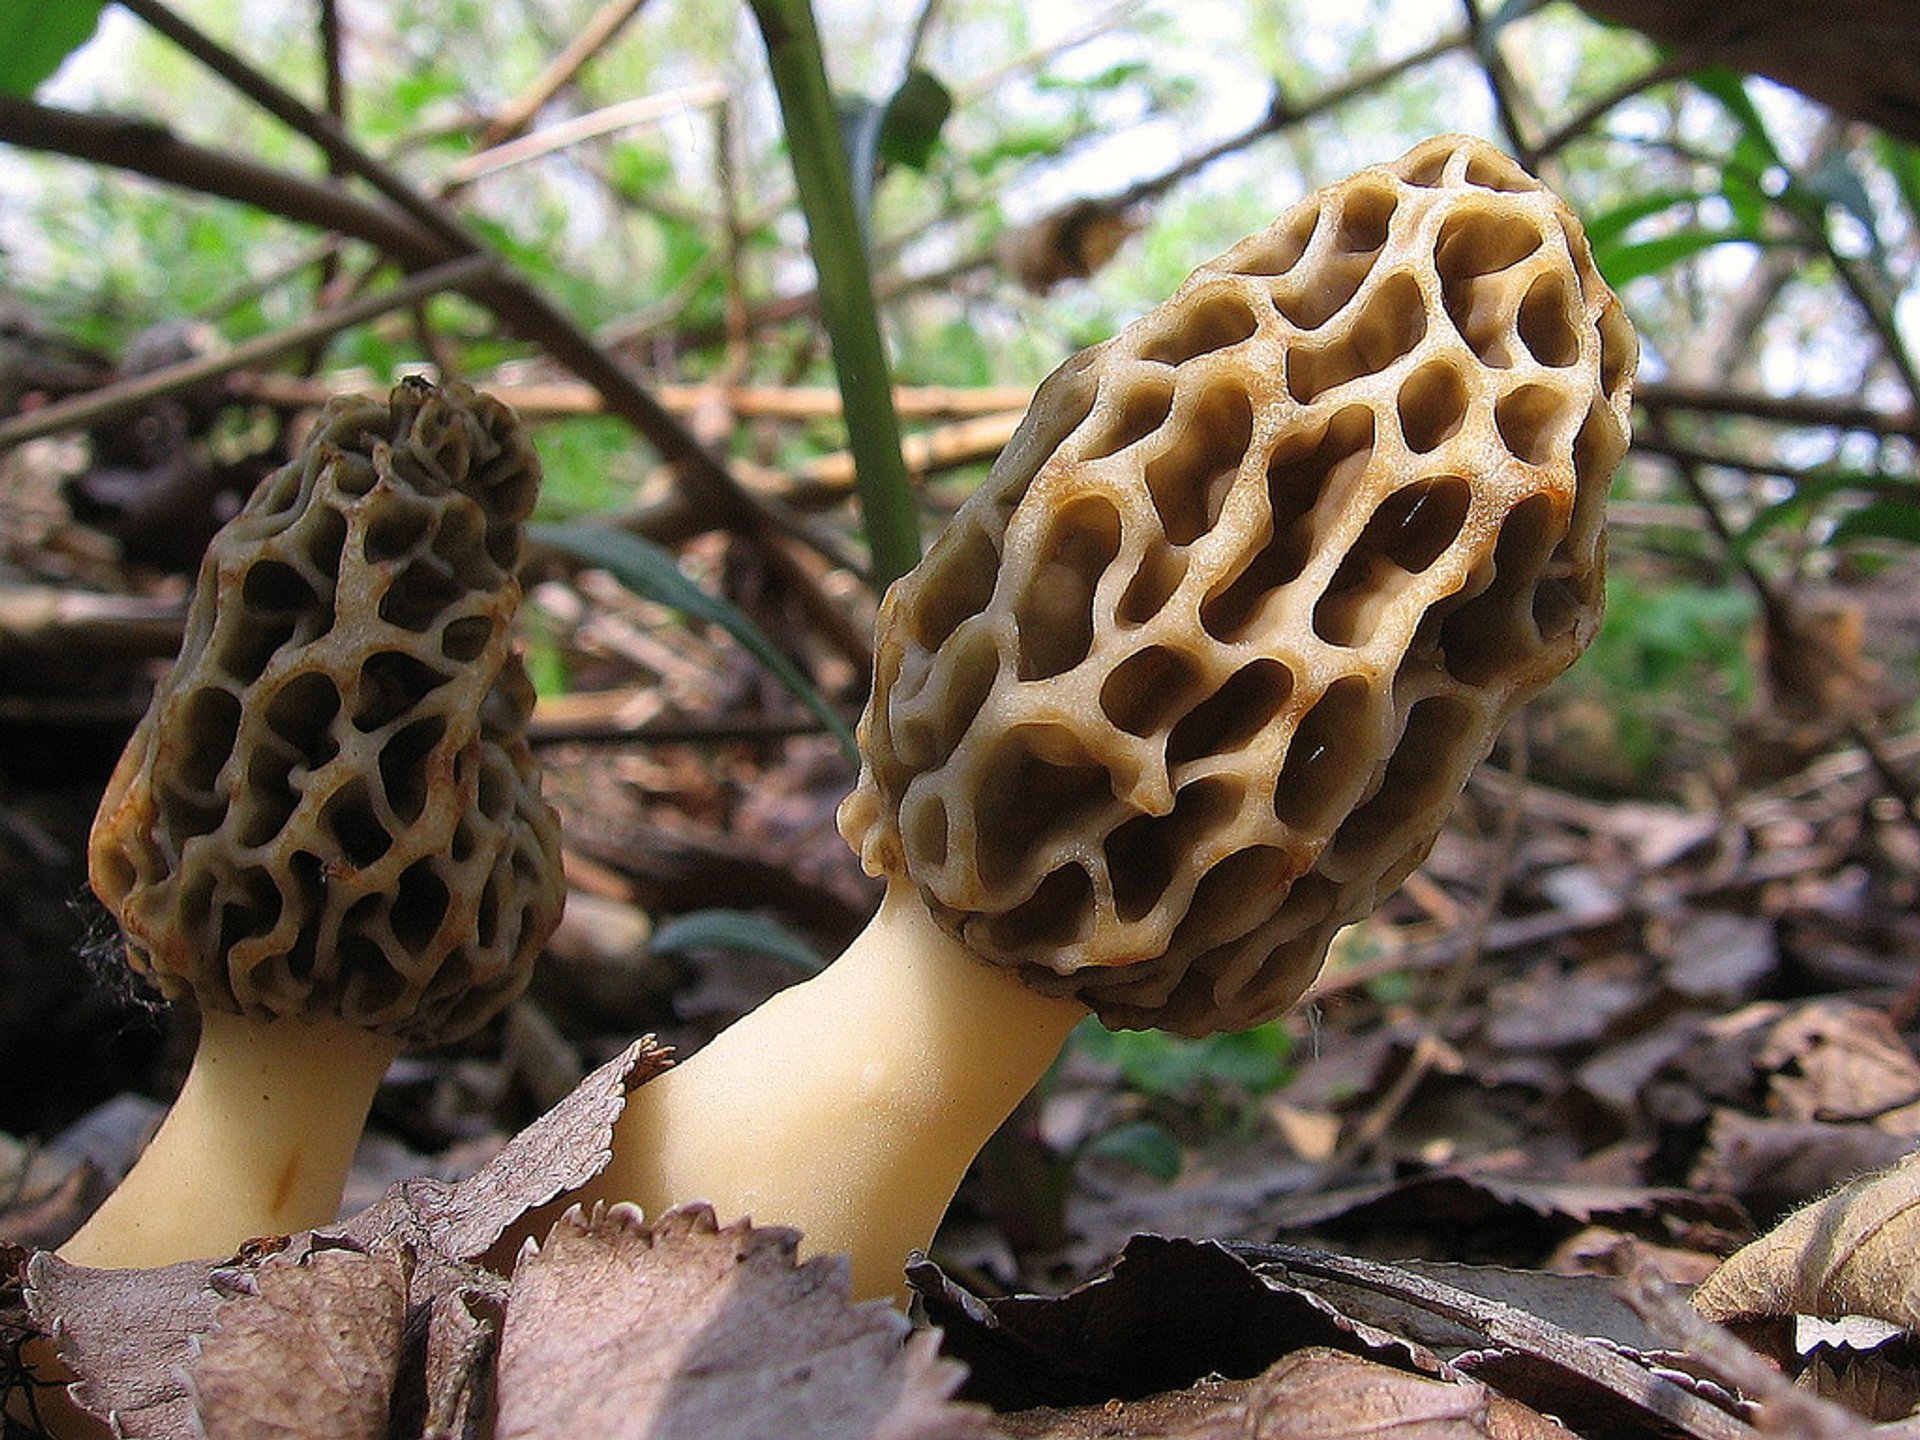 Wild Mushroom Season